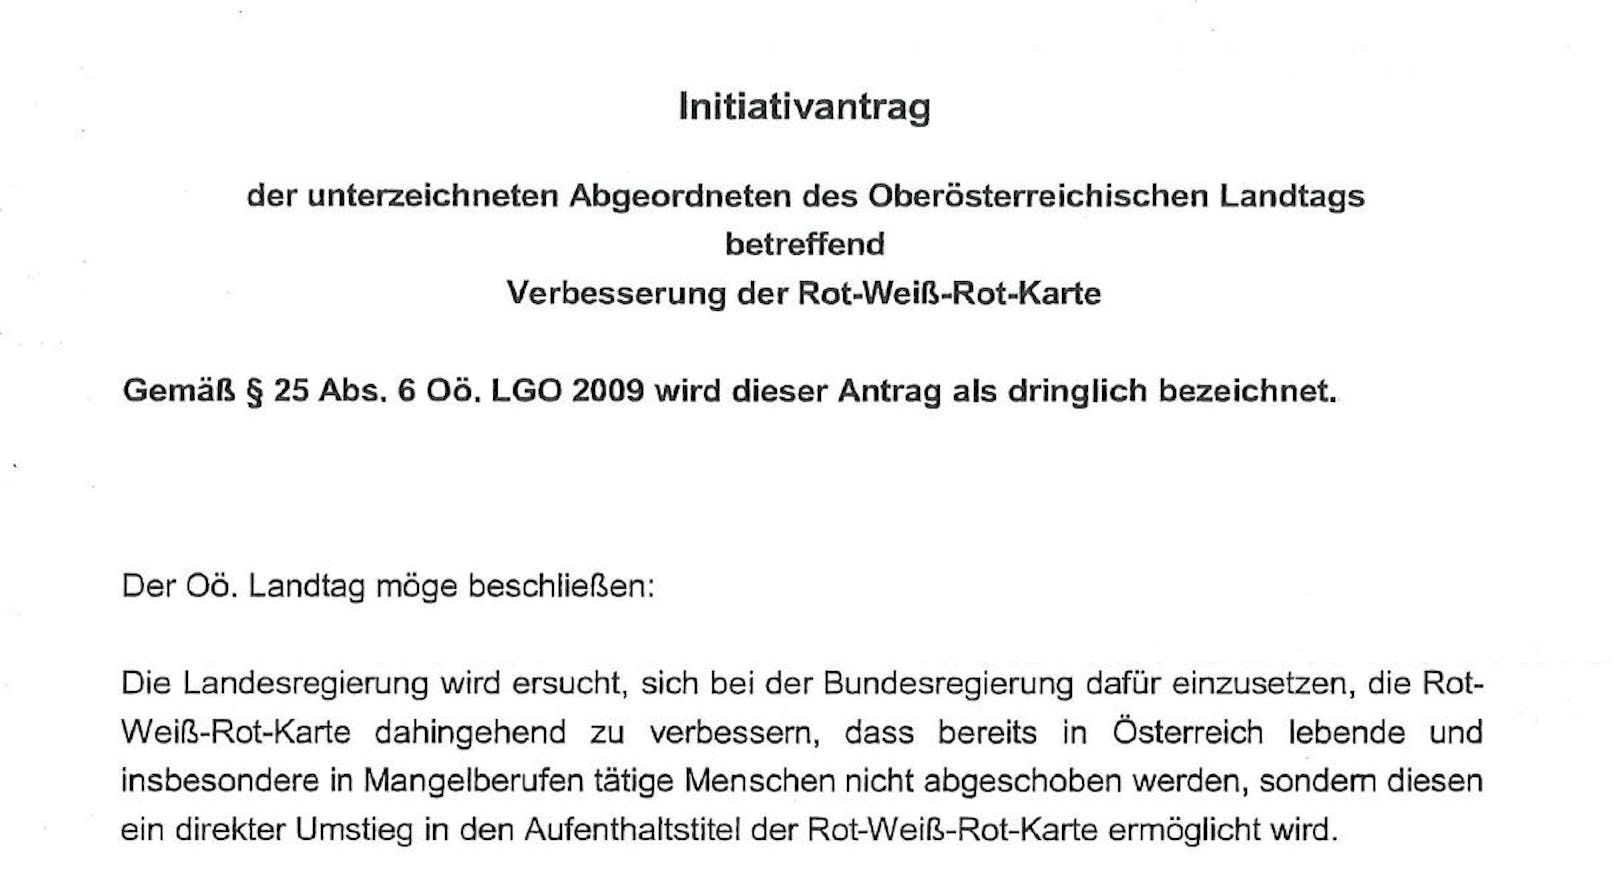 Der von Grünen und Neos im Landtag eingebrachte Initiativantrag zur "Verbesserung der Rot-Weiß-Rot-Karte".